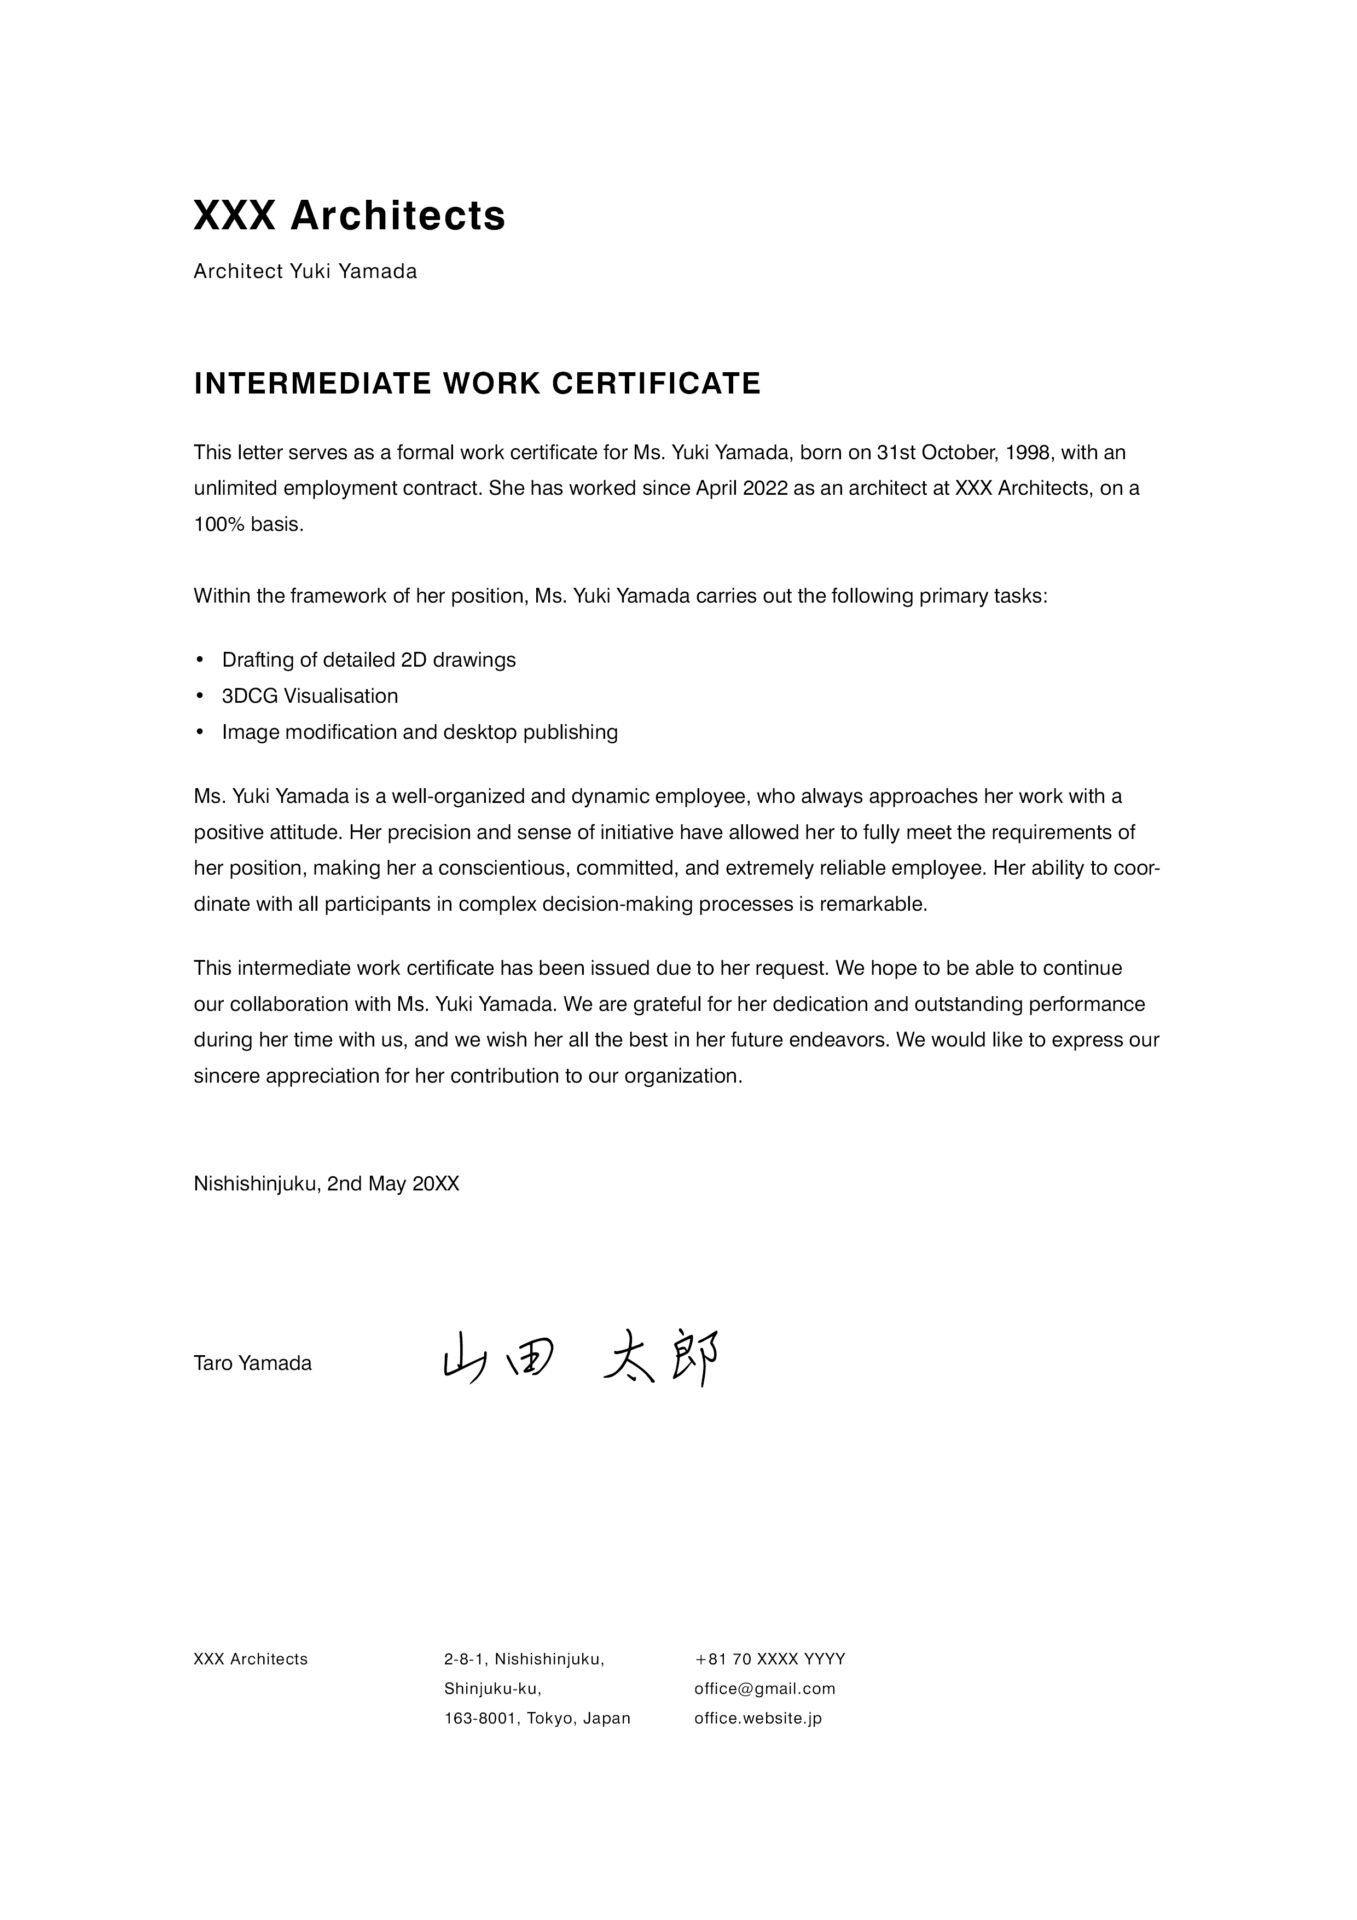 Intermediate work certificate